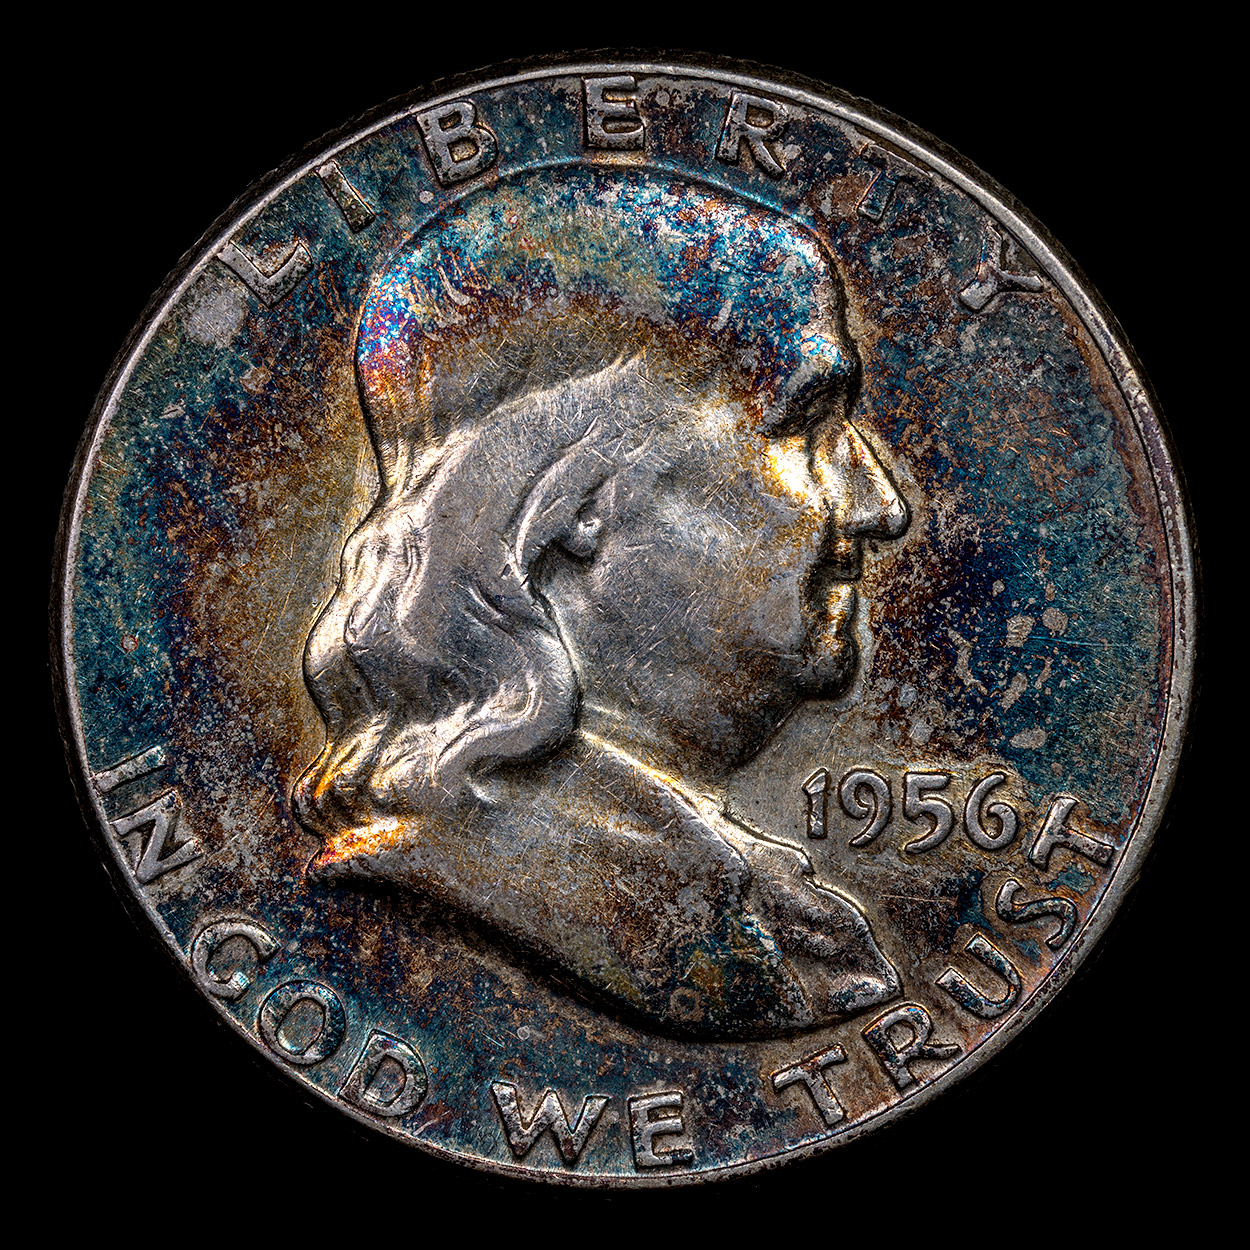 1956-Toned-Franklin-Half-Dollar-Obverse.jpg